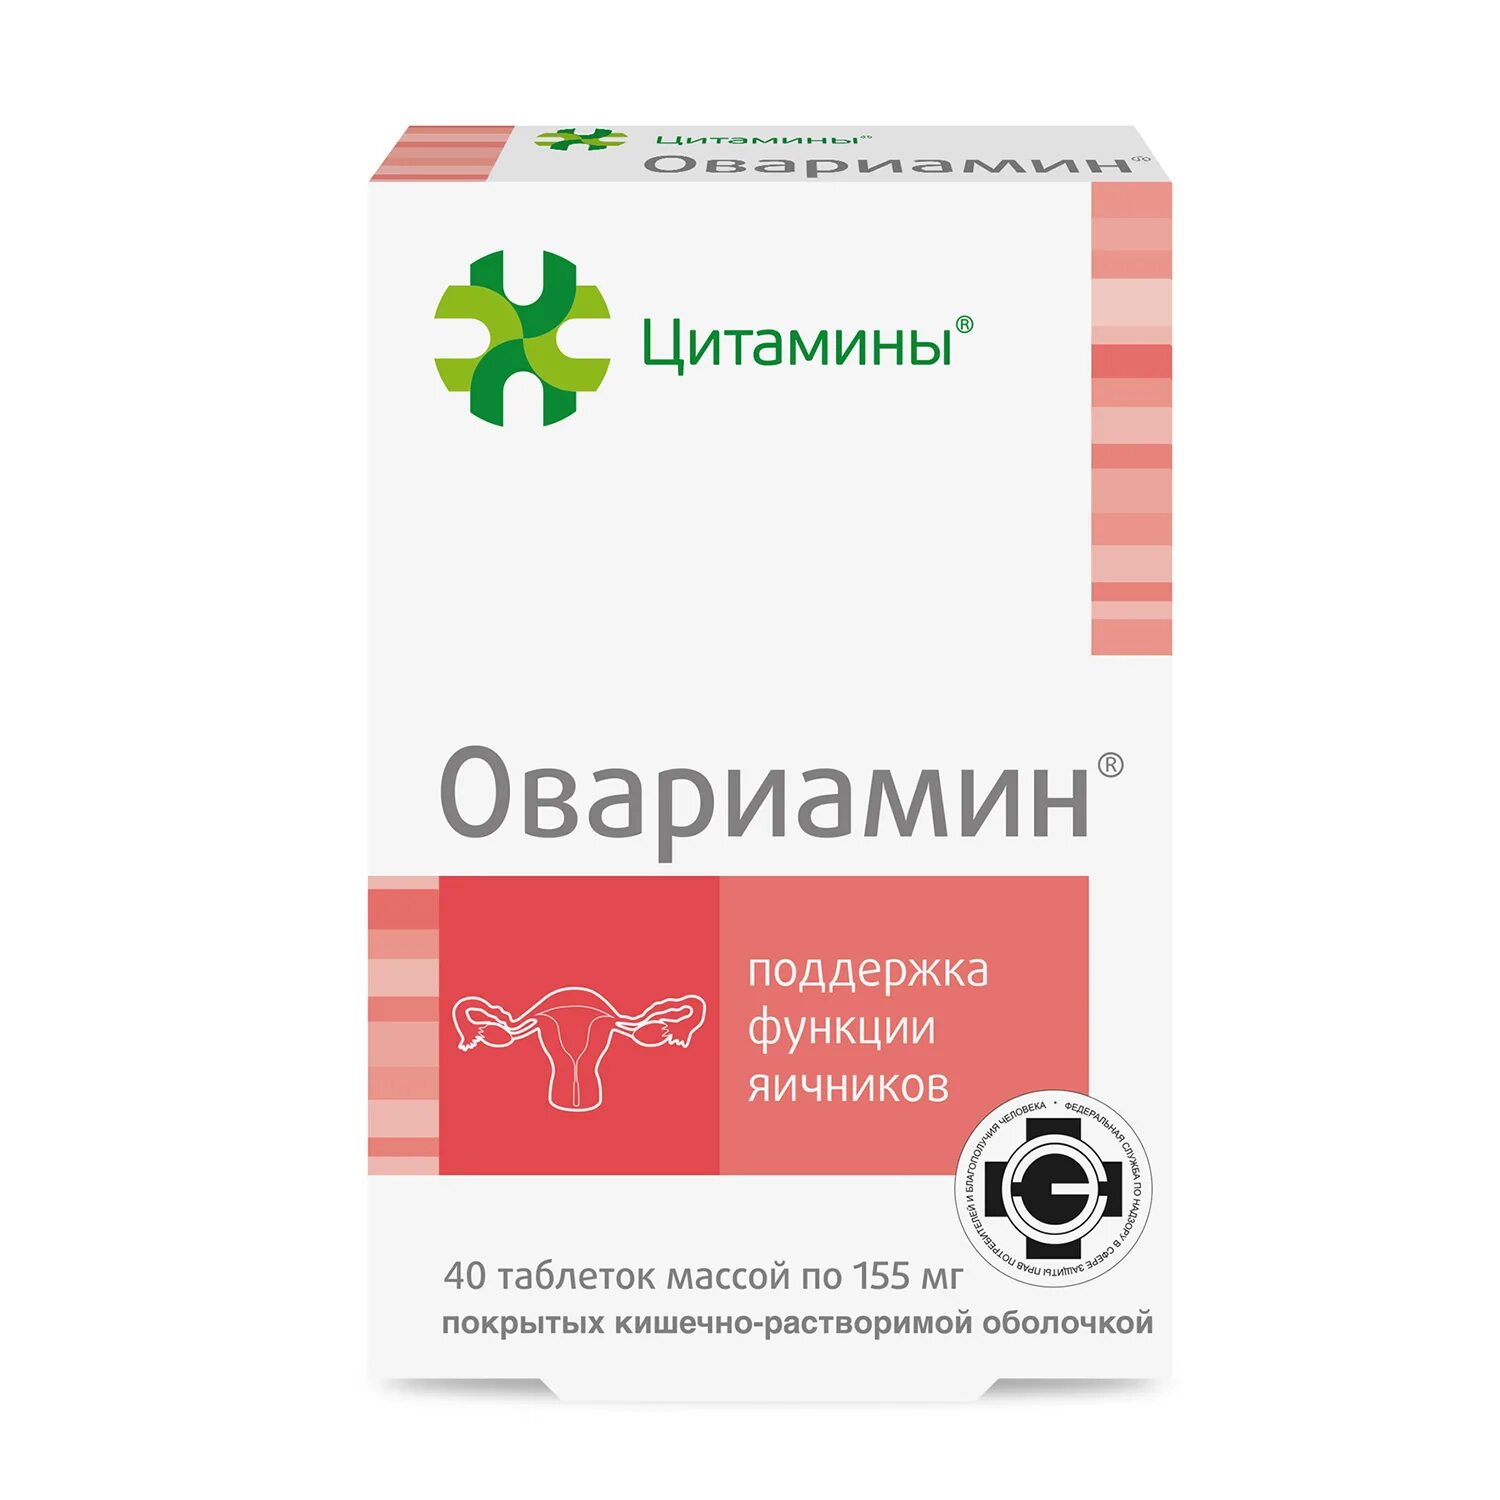 Лекарство для яичников Овариамин. Цитамины Овариамин. Панкрамин. Вазаламин.